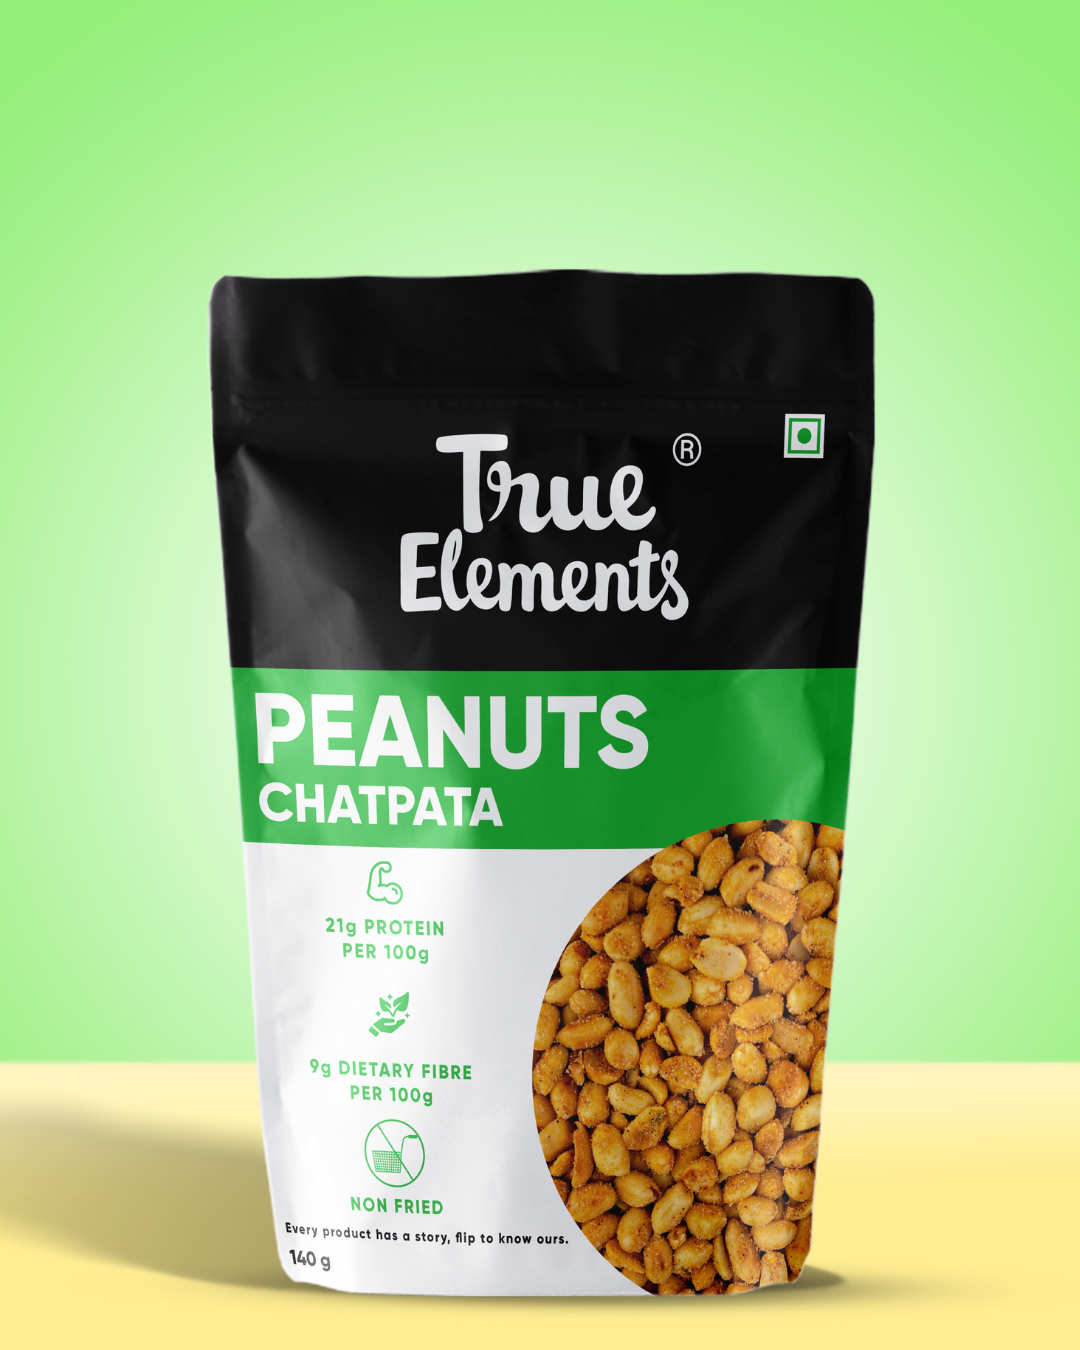 True Elements Peanuts Chatpata